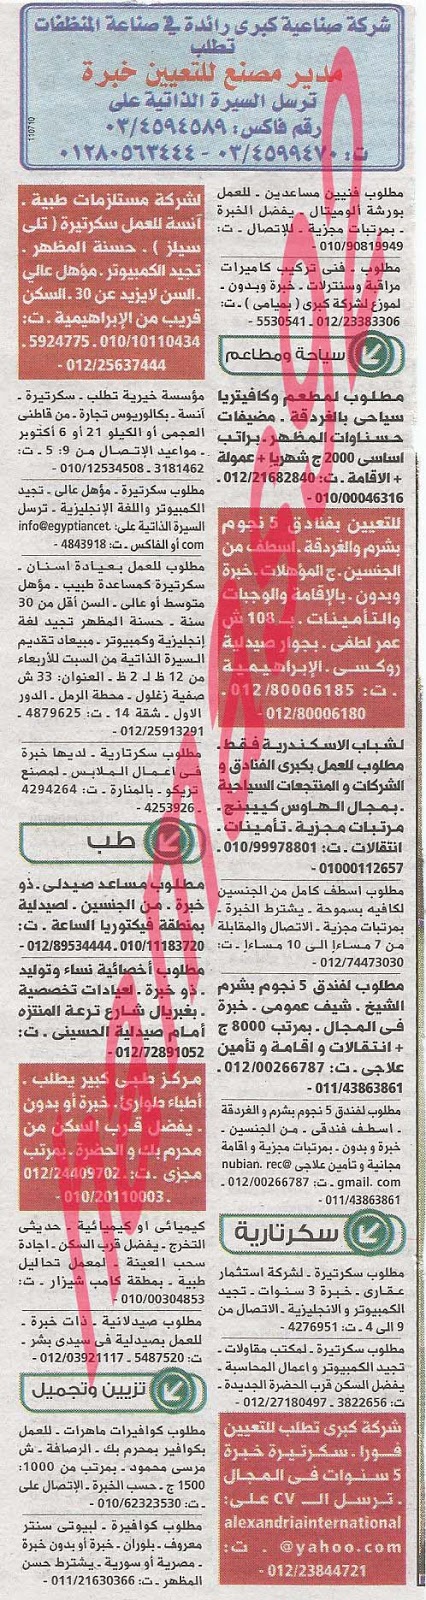 وظائف خالية فى جريدة الوسيط الاسكندرية الاثنين 29-07-2013 %D9%88+%D8%B3+%D8%B3+4